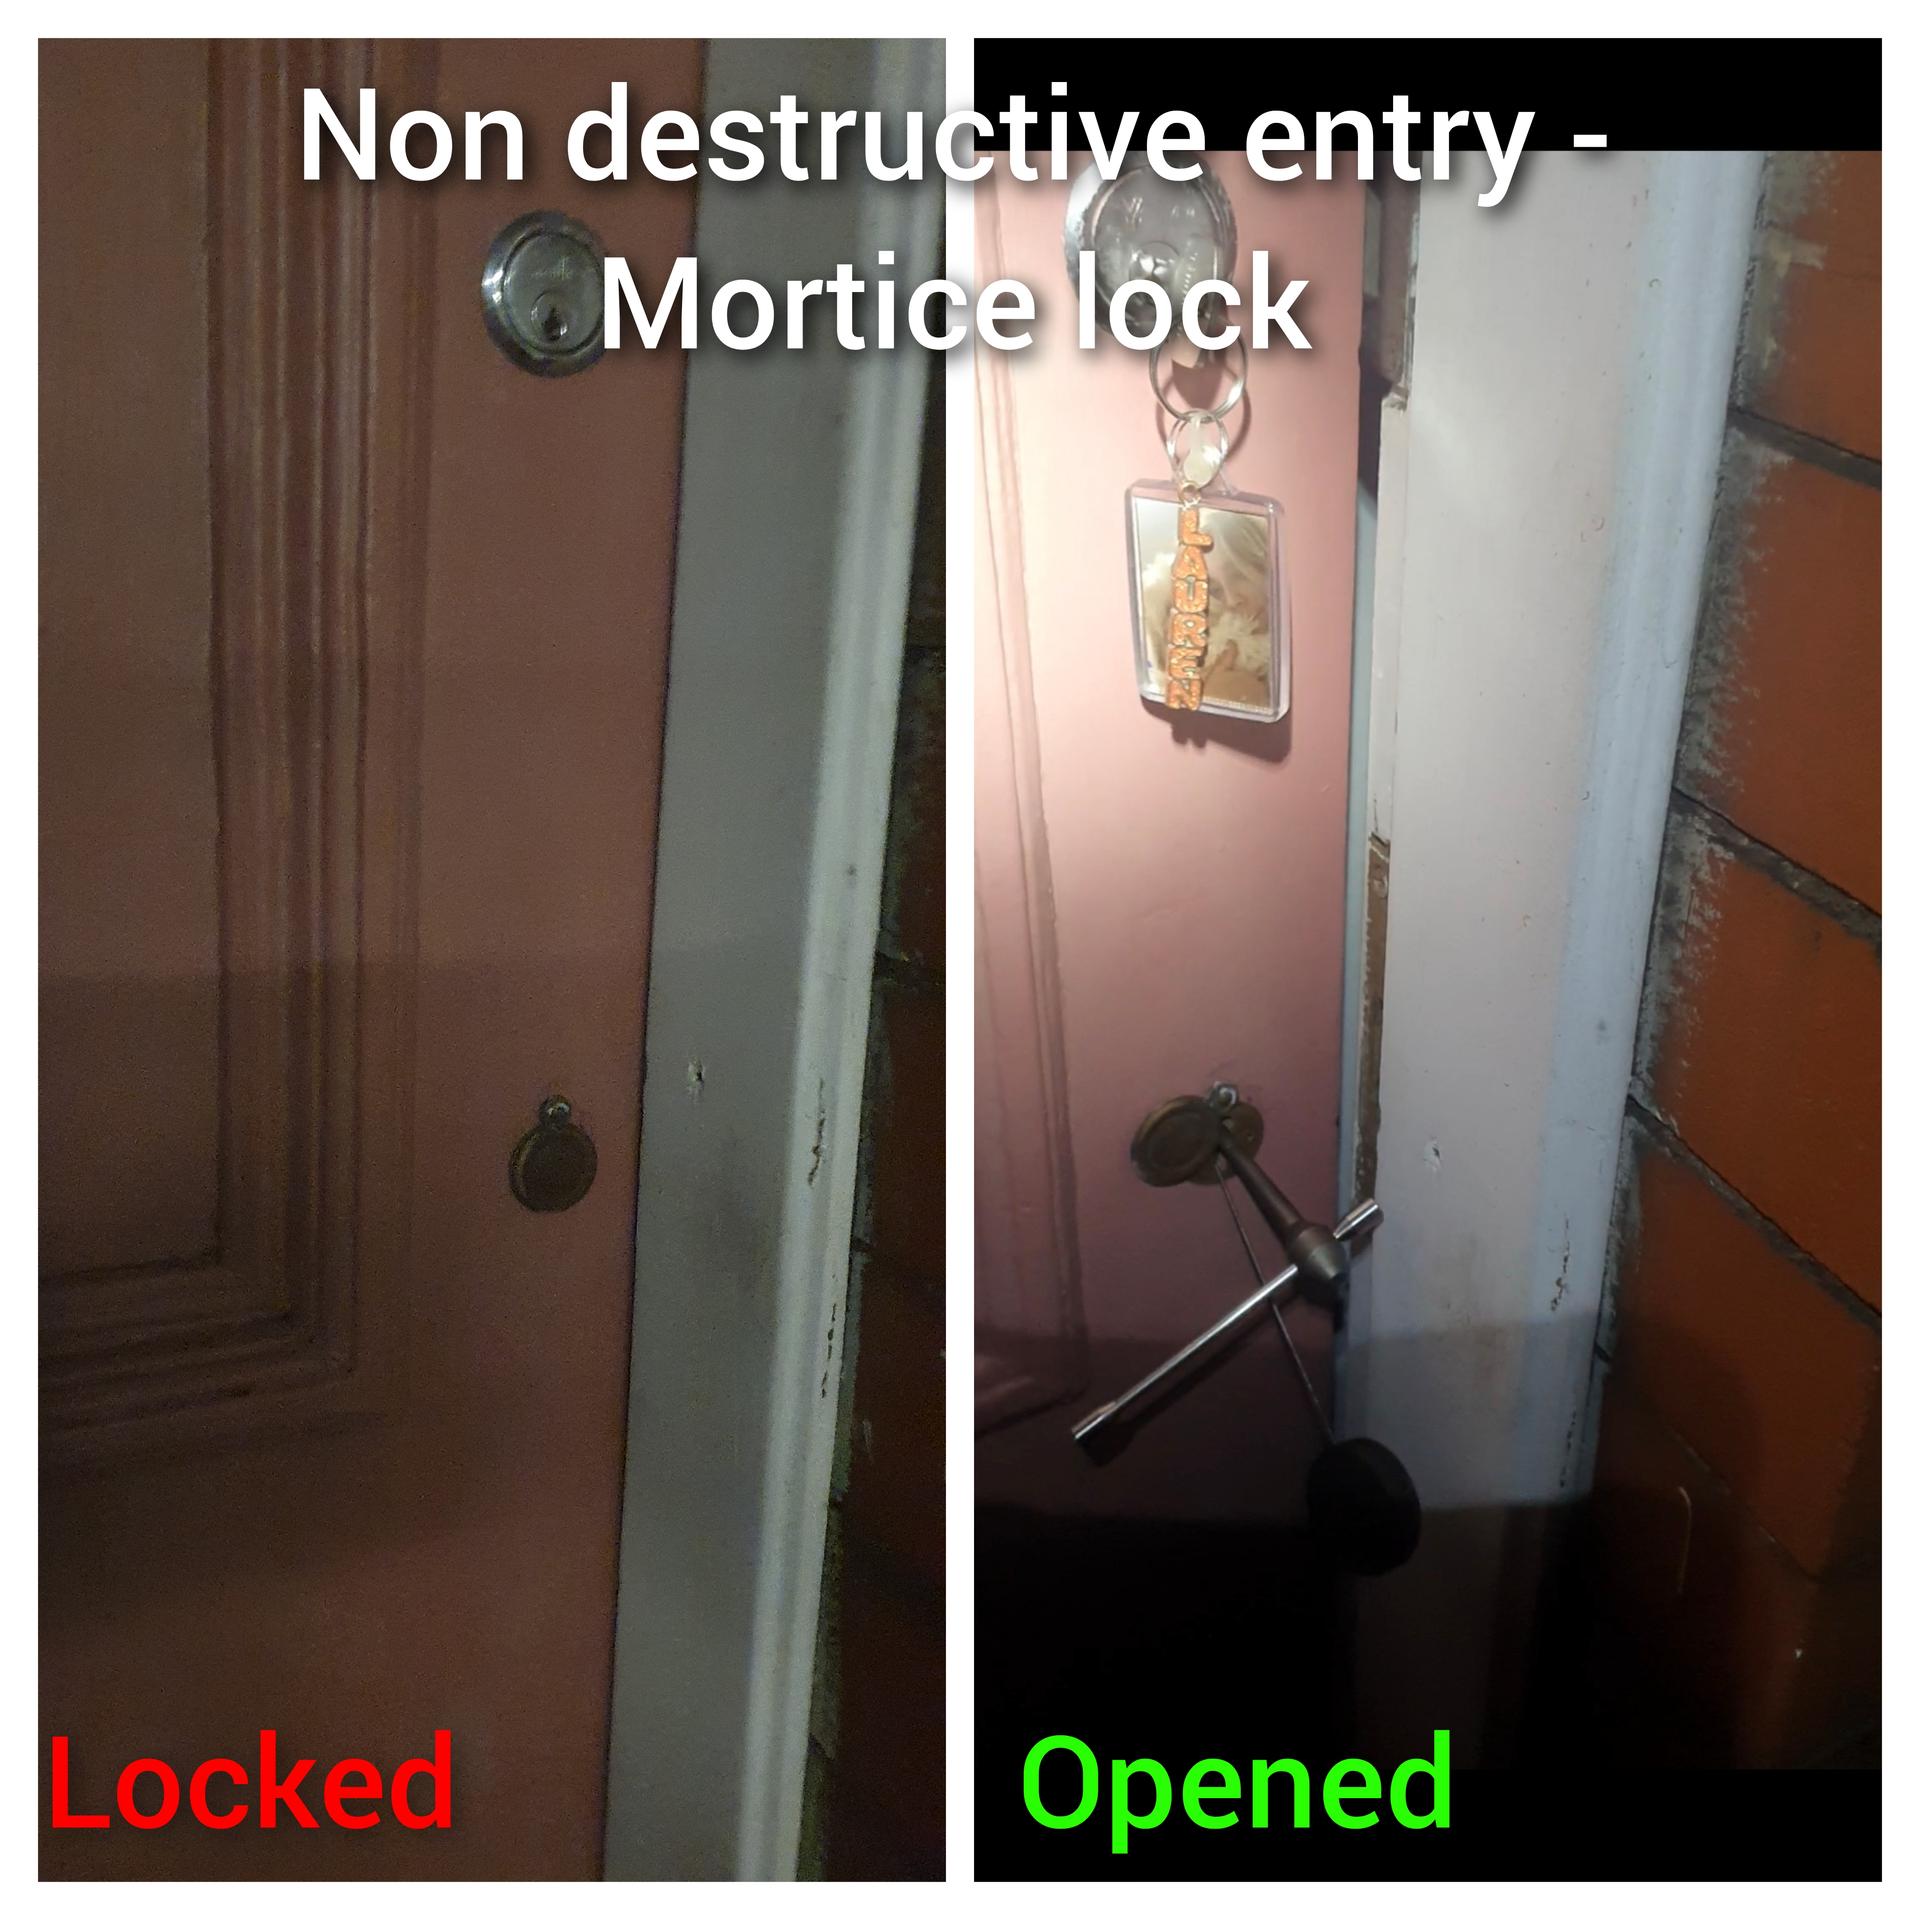 non-destructive entry locksmith services in wallsend